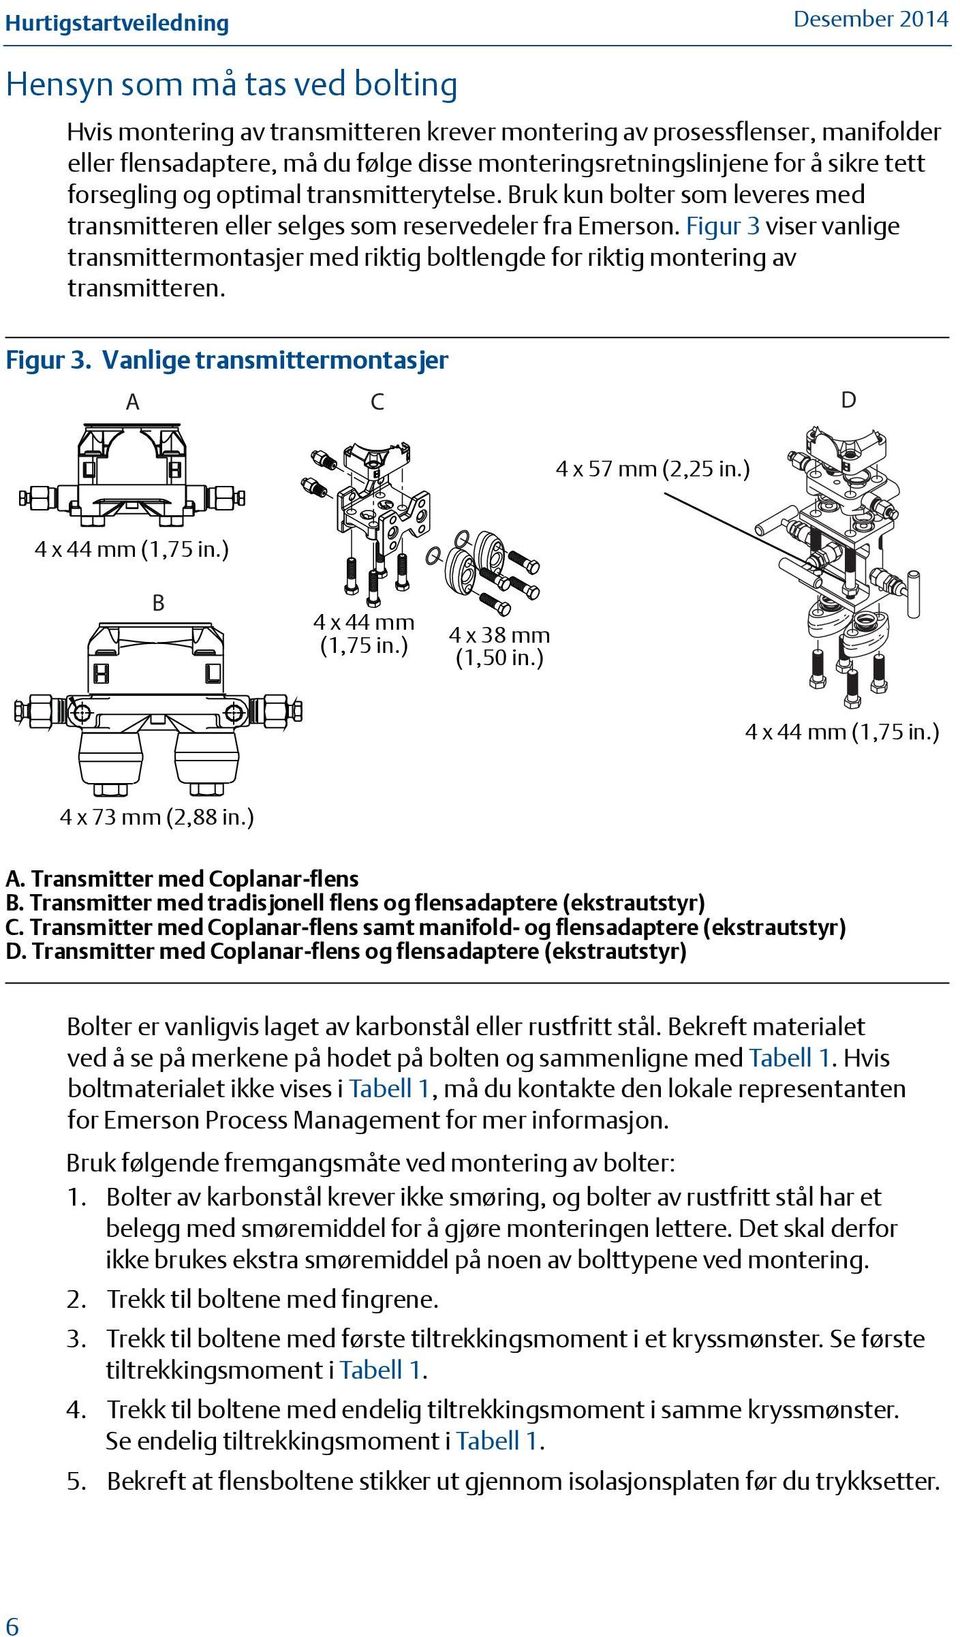 Figur 3 viser vanlige transmittermontasjer med riktig boltlengde for riktig montering av transmitteren. Figur 3. Vanlige transmittermontasjer A C D 44 x x 572.25-in. mm (2,25 (57mm) in.) 4 x 44 1.